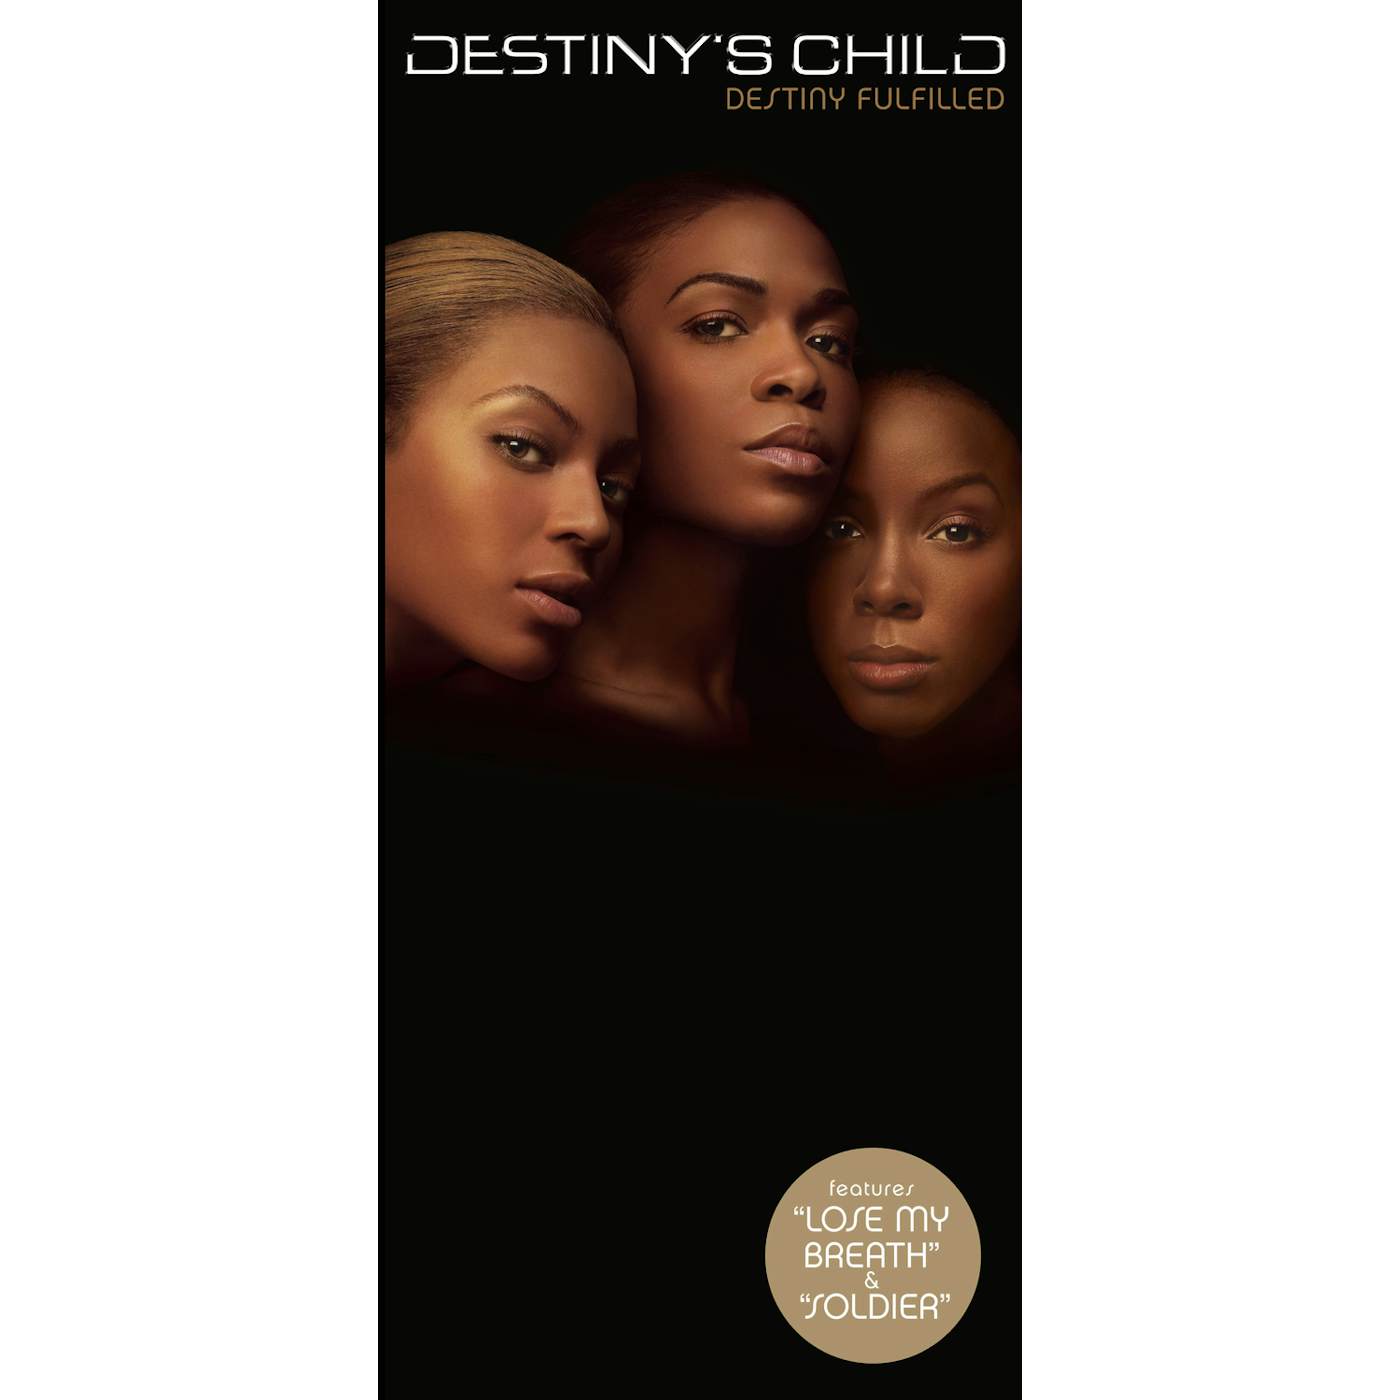 Destiny's Child DESTINY FULFILLED CD